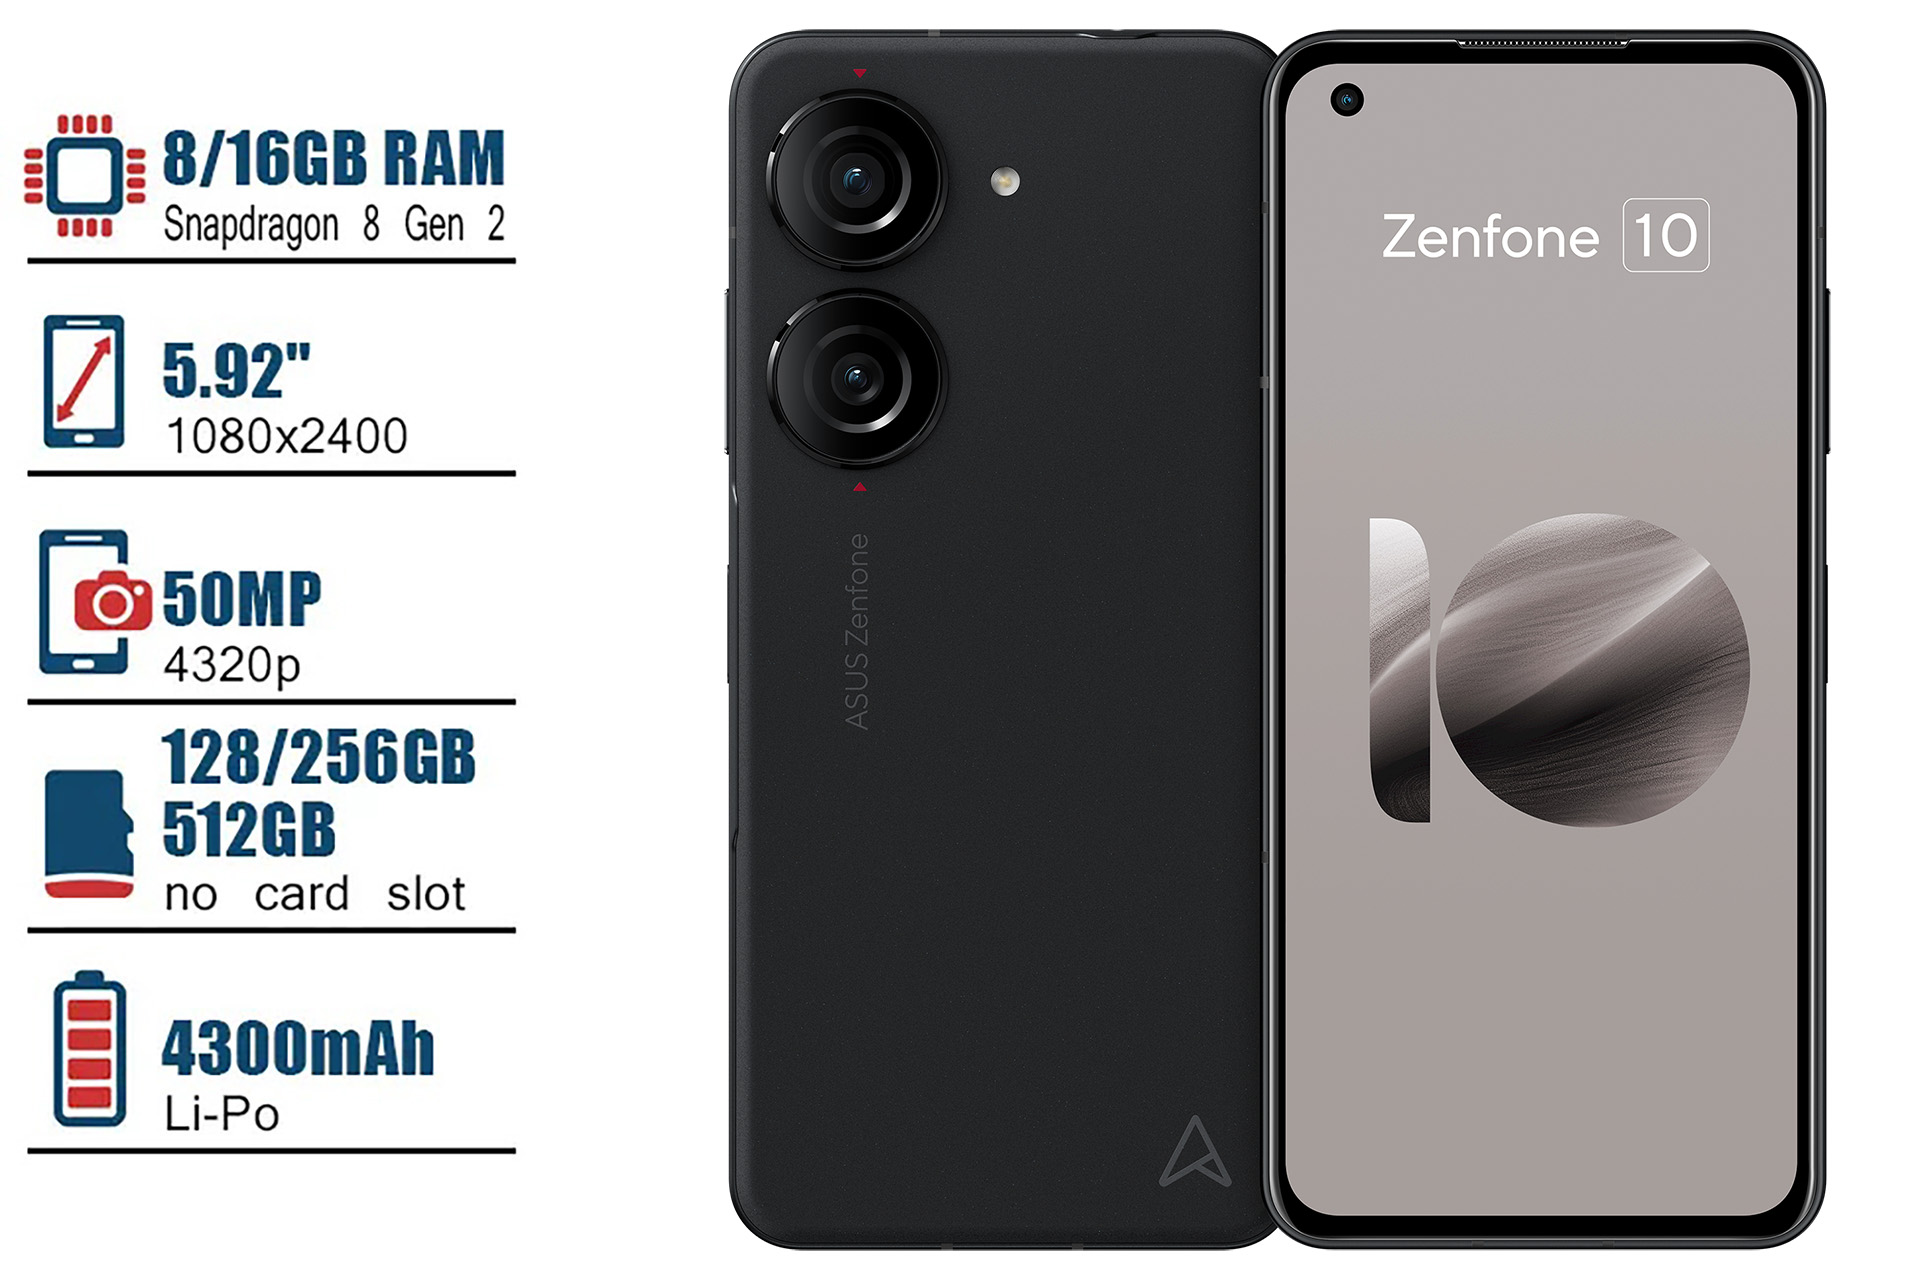 ASUS Announces the New Zenfone 10